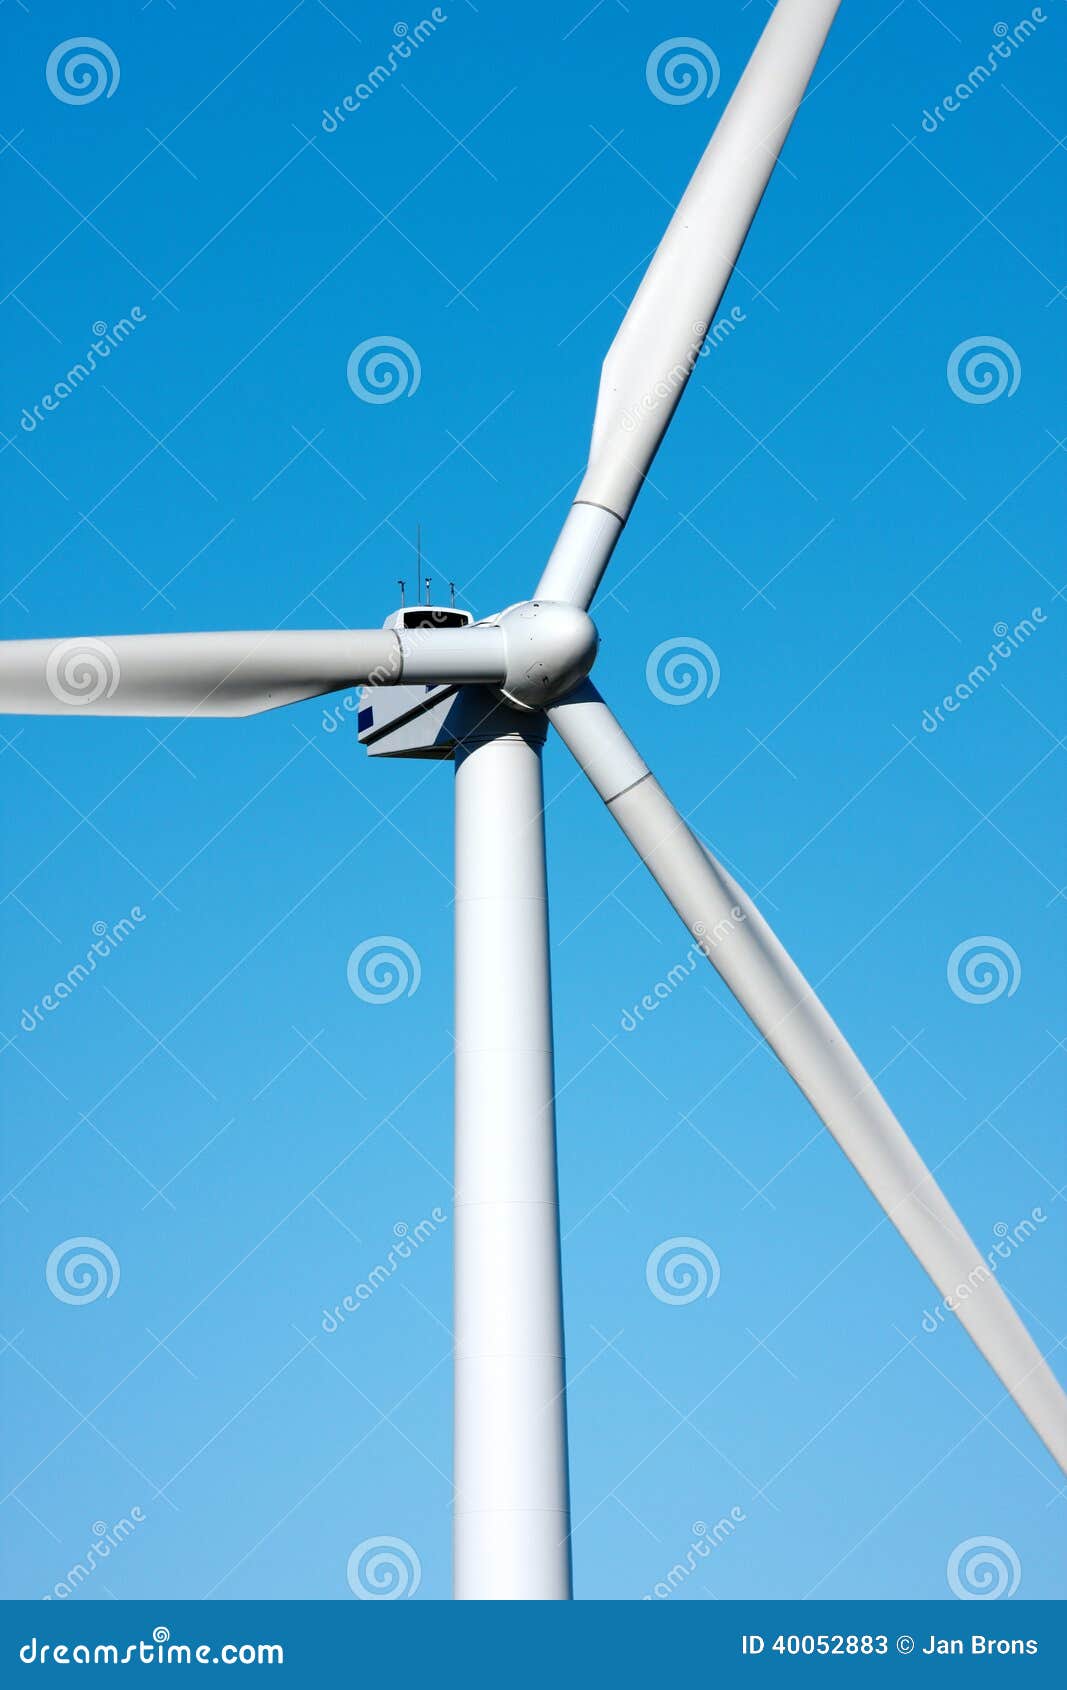 风车可选择能源

巩固一个干净的环境的巨型现代风车。